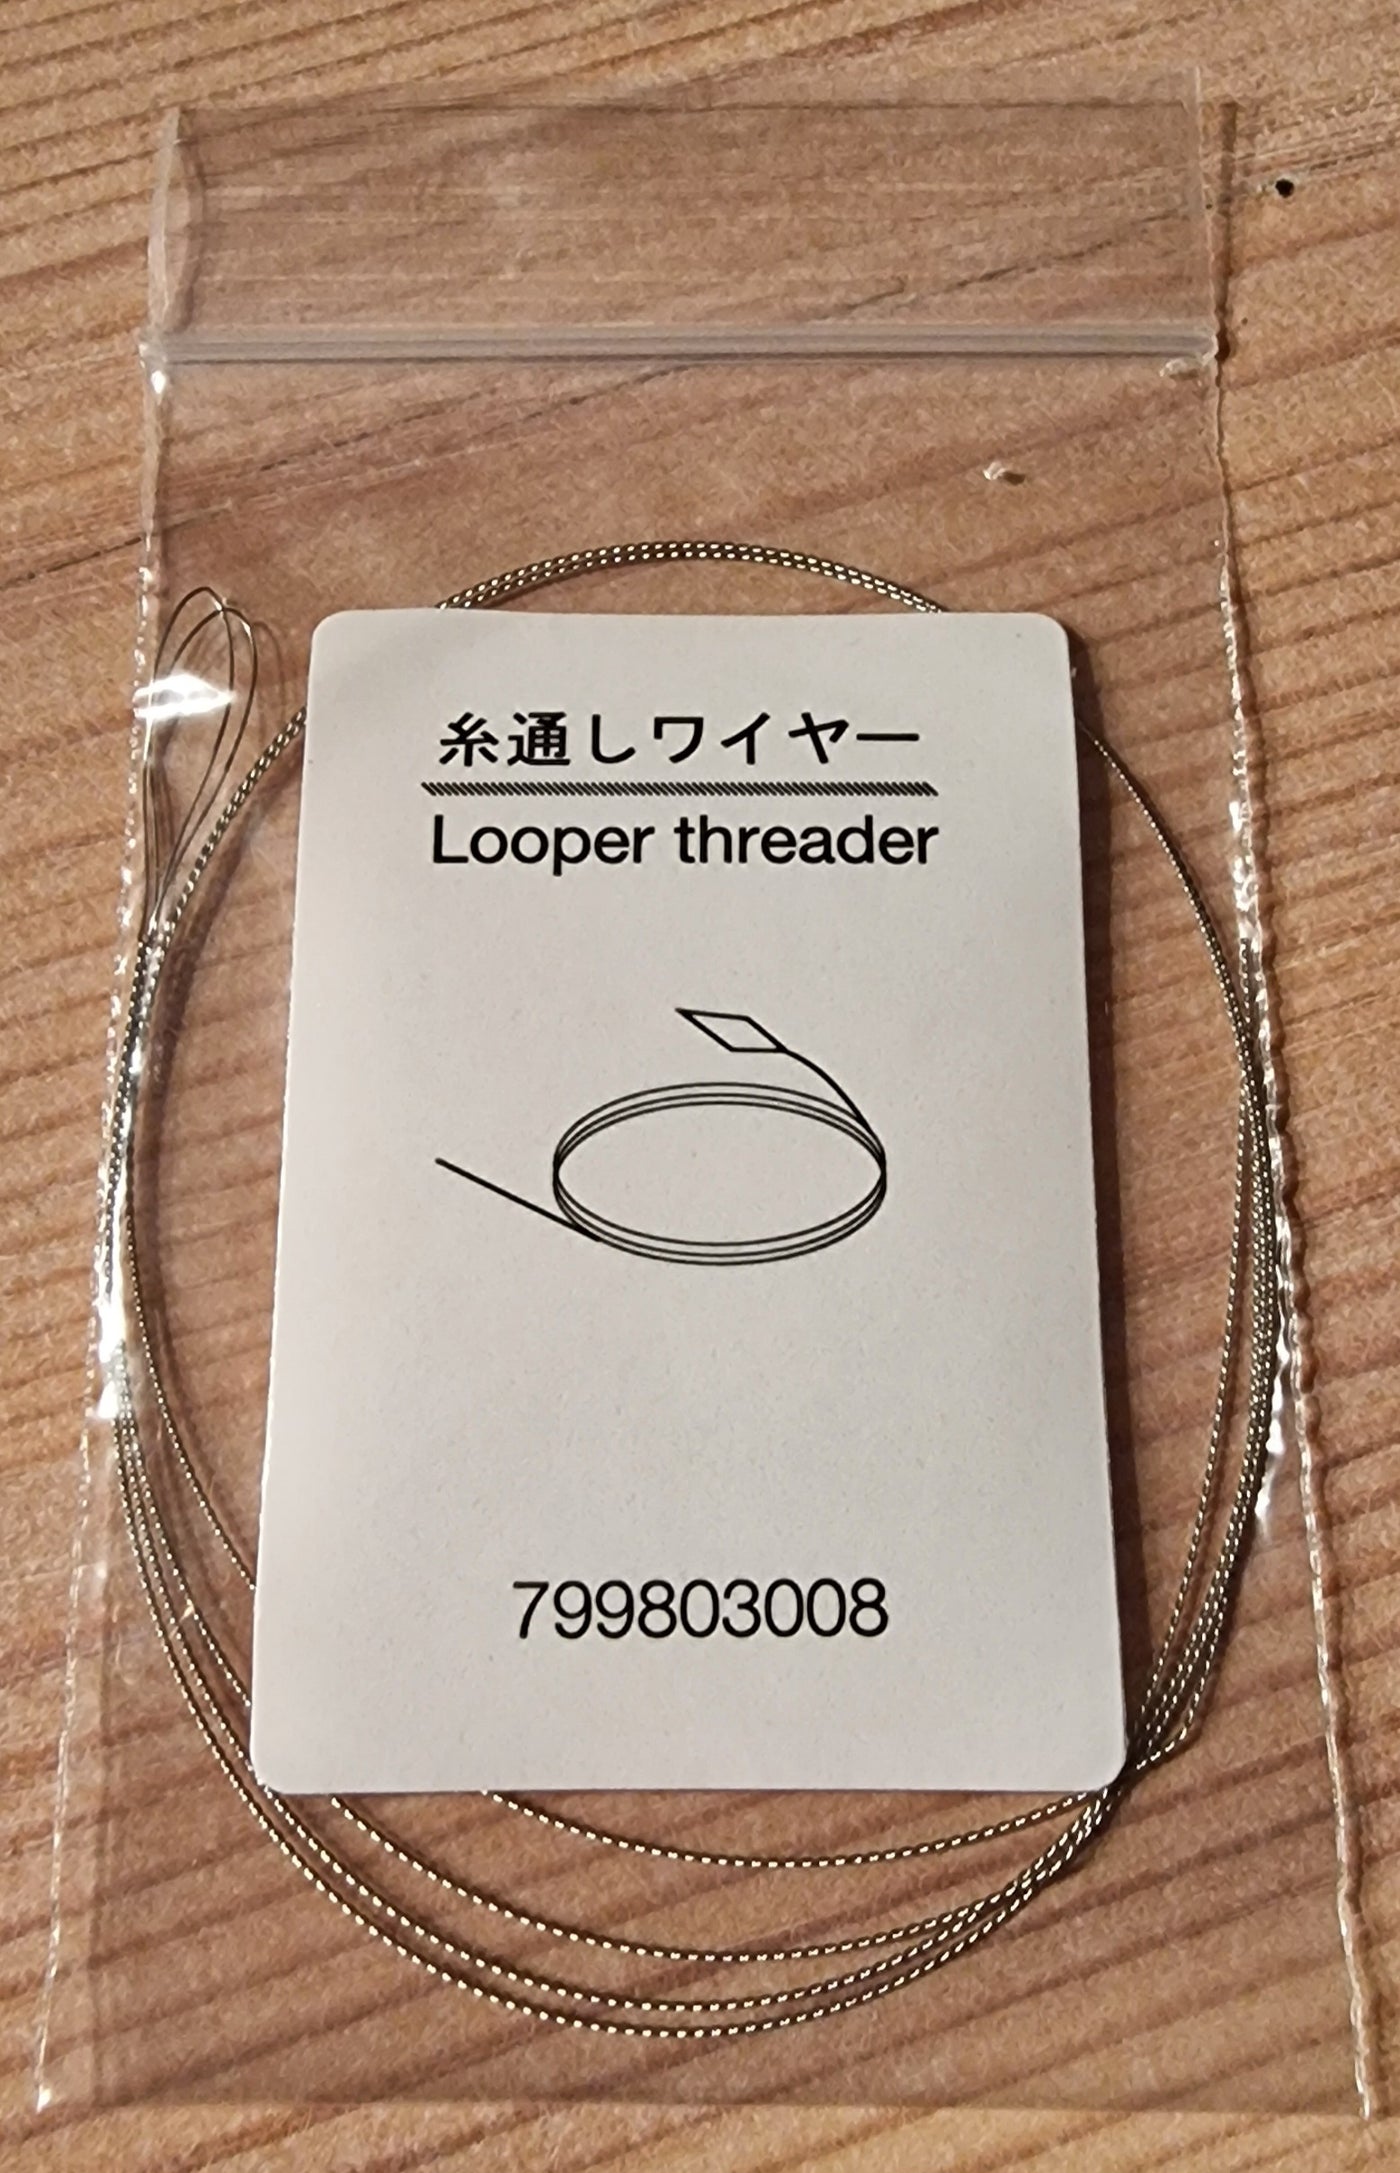 Looper Threader